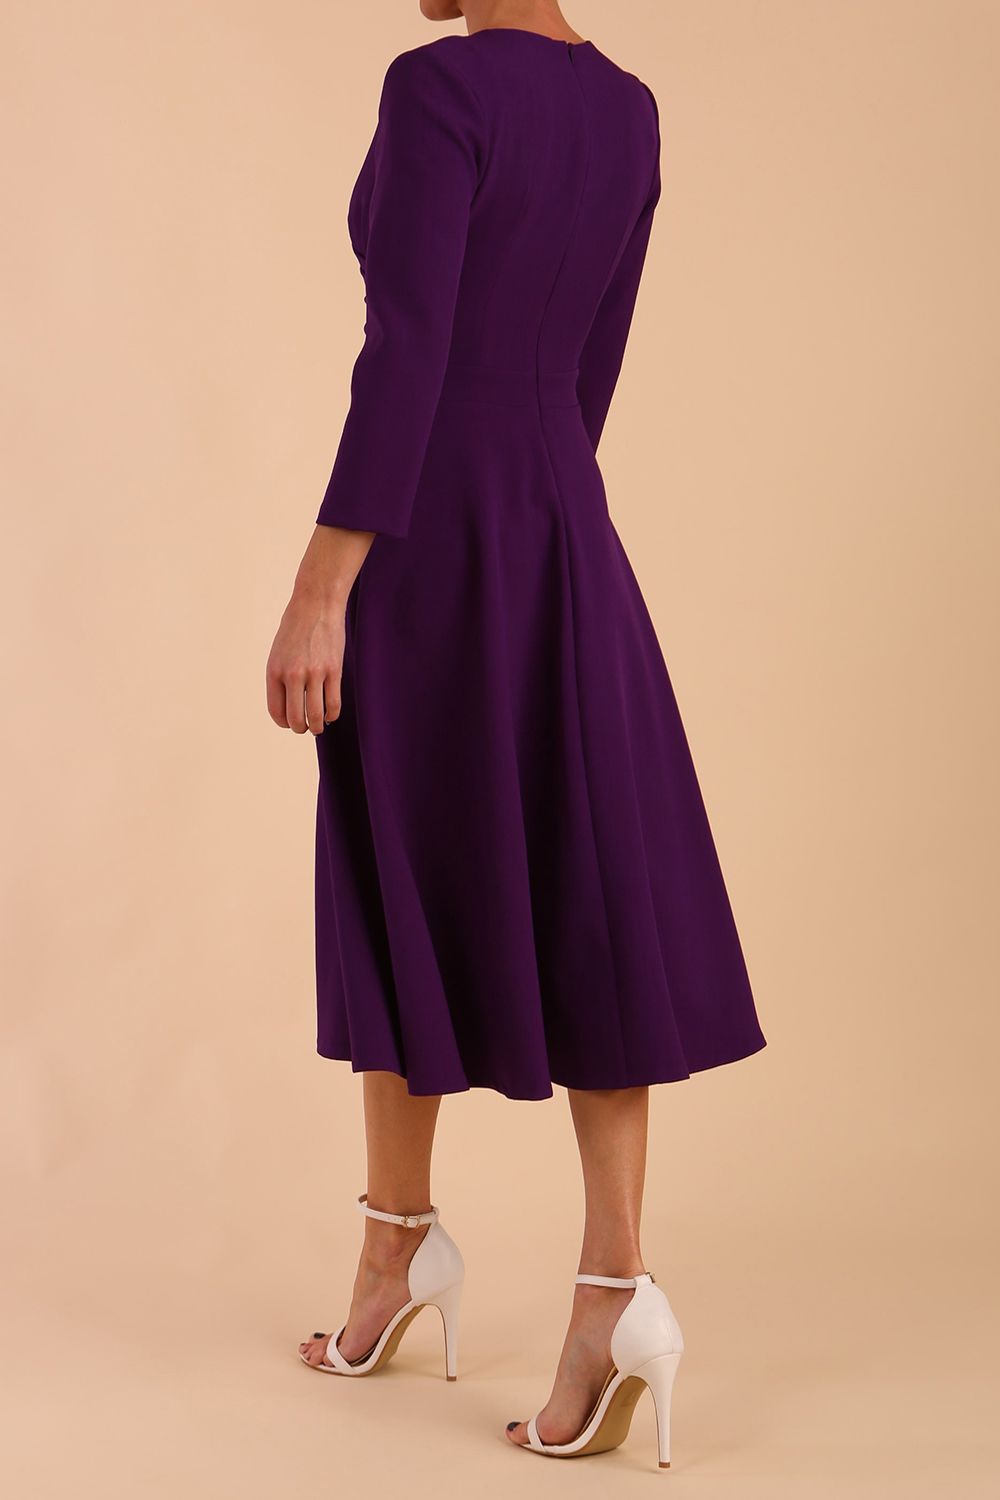 Model wearing diva catwalk Kate 3/4 Length Sleeve A-Line Swing Dress in Deep Purple back